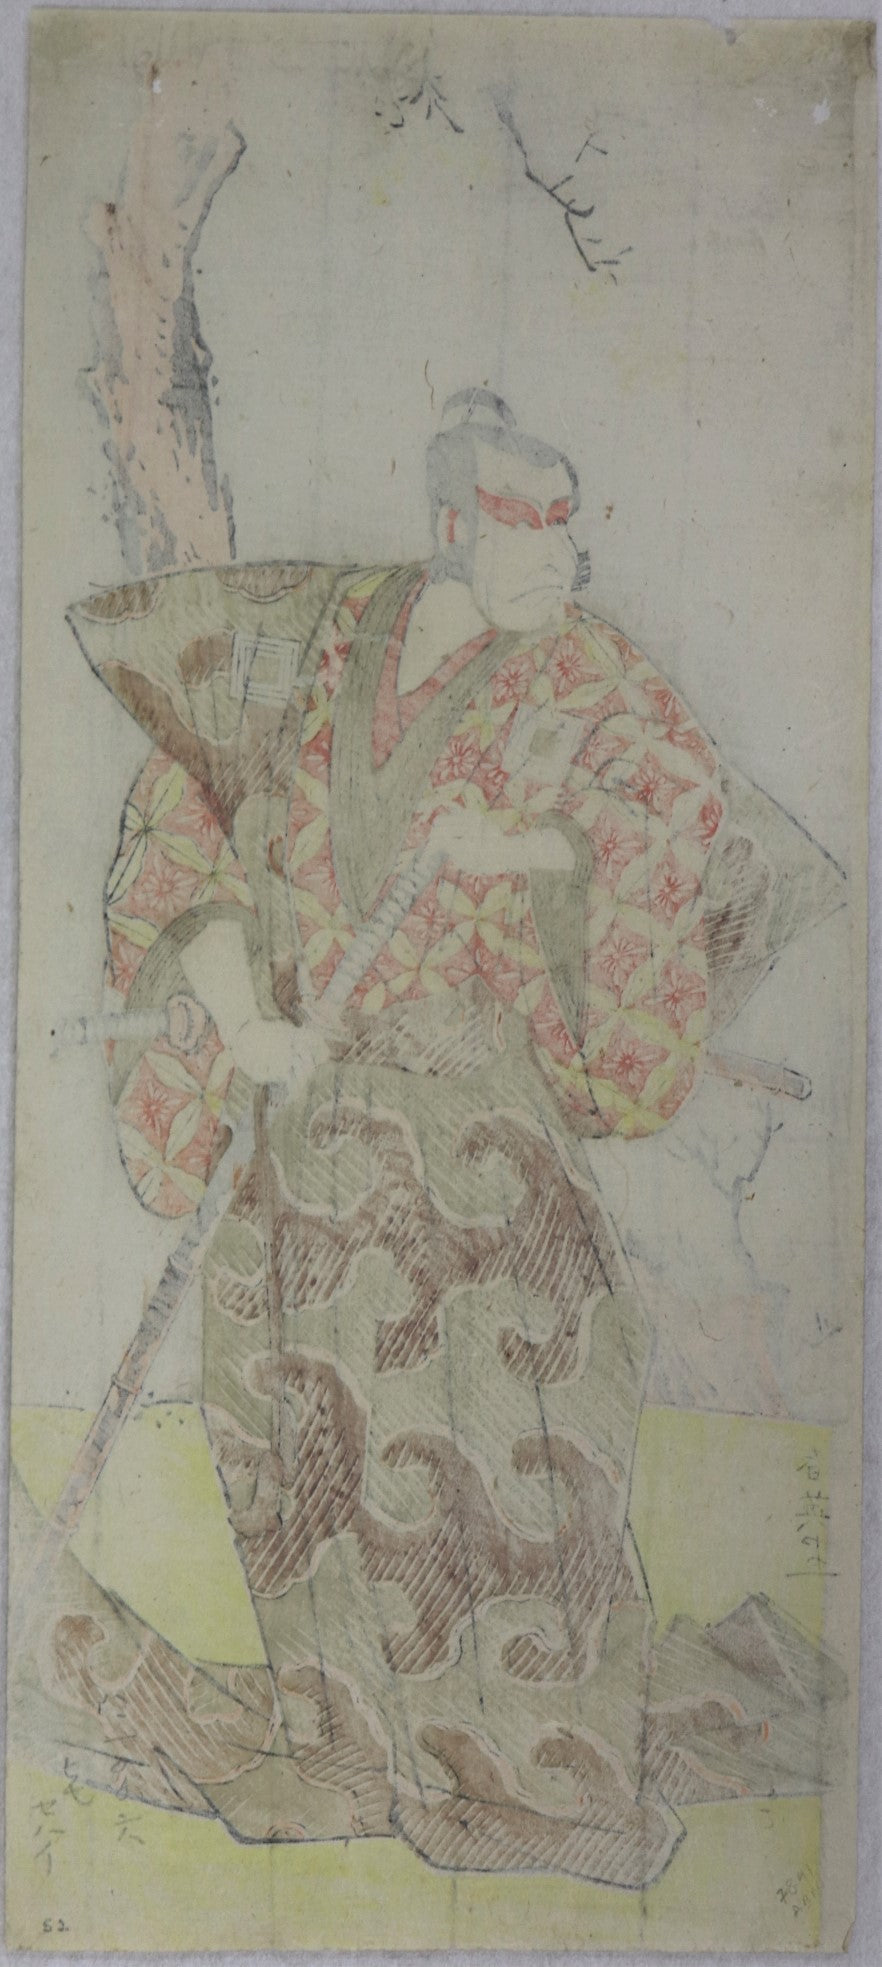 Ichikawa Danjuro V by Katsukawa Shun'ei / Ichikawa Danjuro par Katsukawa Shun'ei ( 1795)